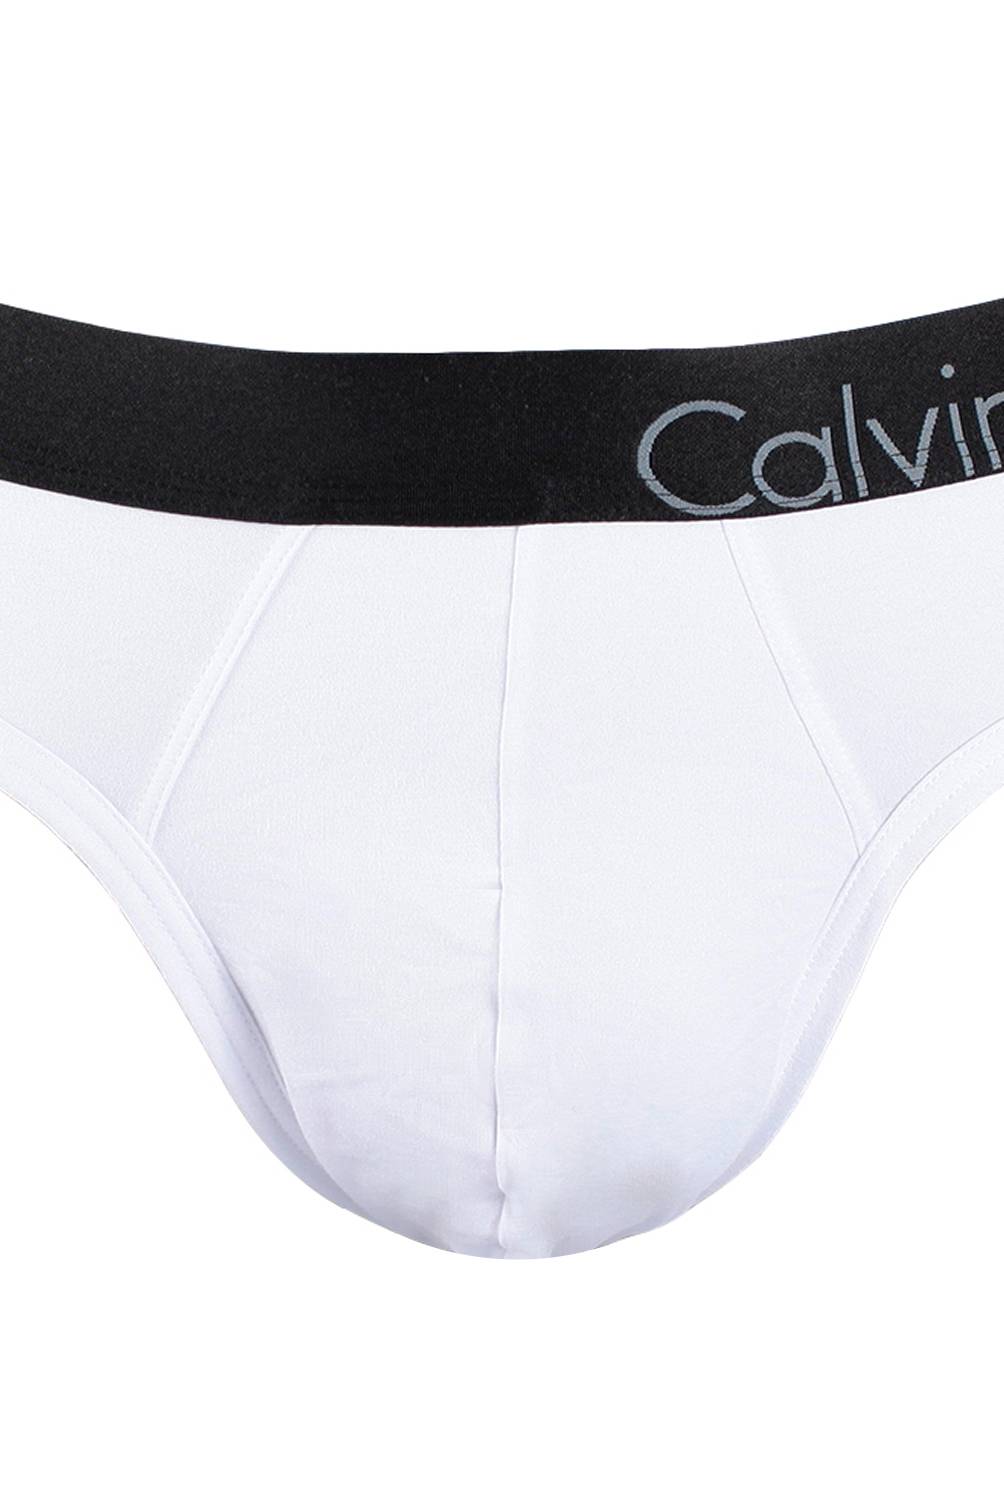 Calvin Klein - Slip